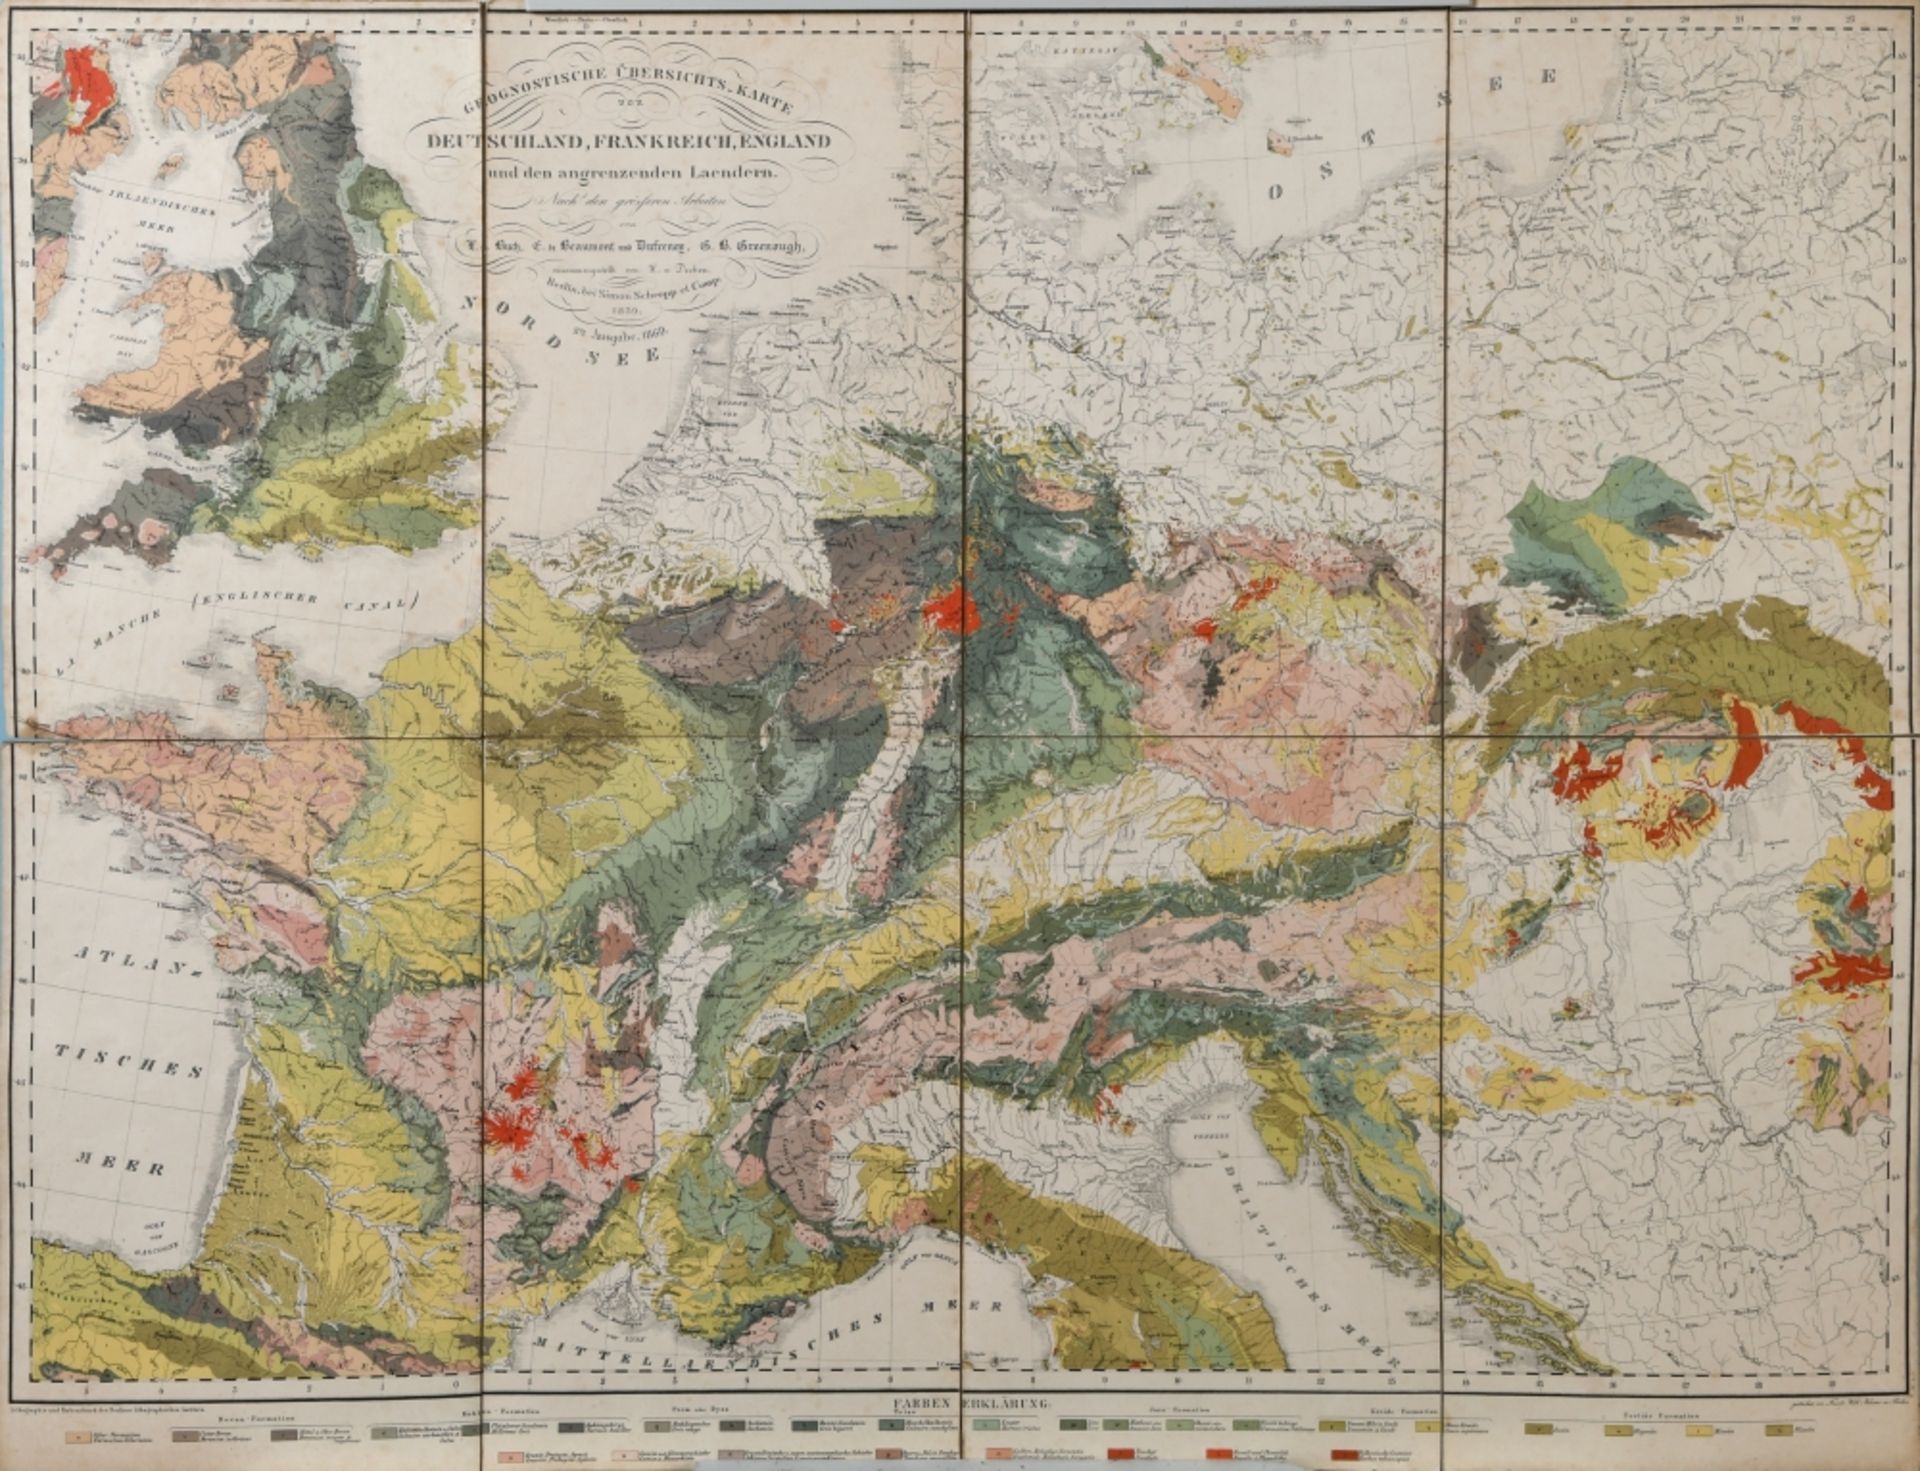 Landkarte " Geognostische Übersichts-Karte von Deutschland, Frankreich, England" - Bild 2 aus 6